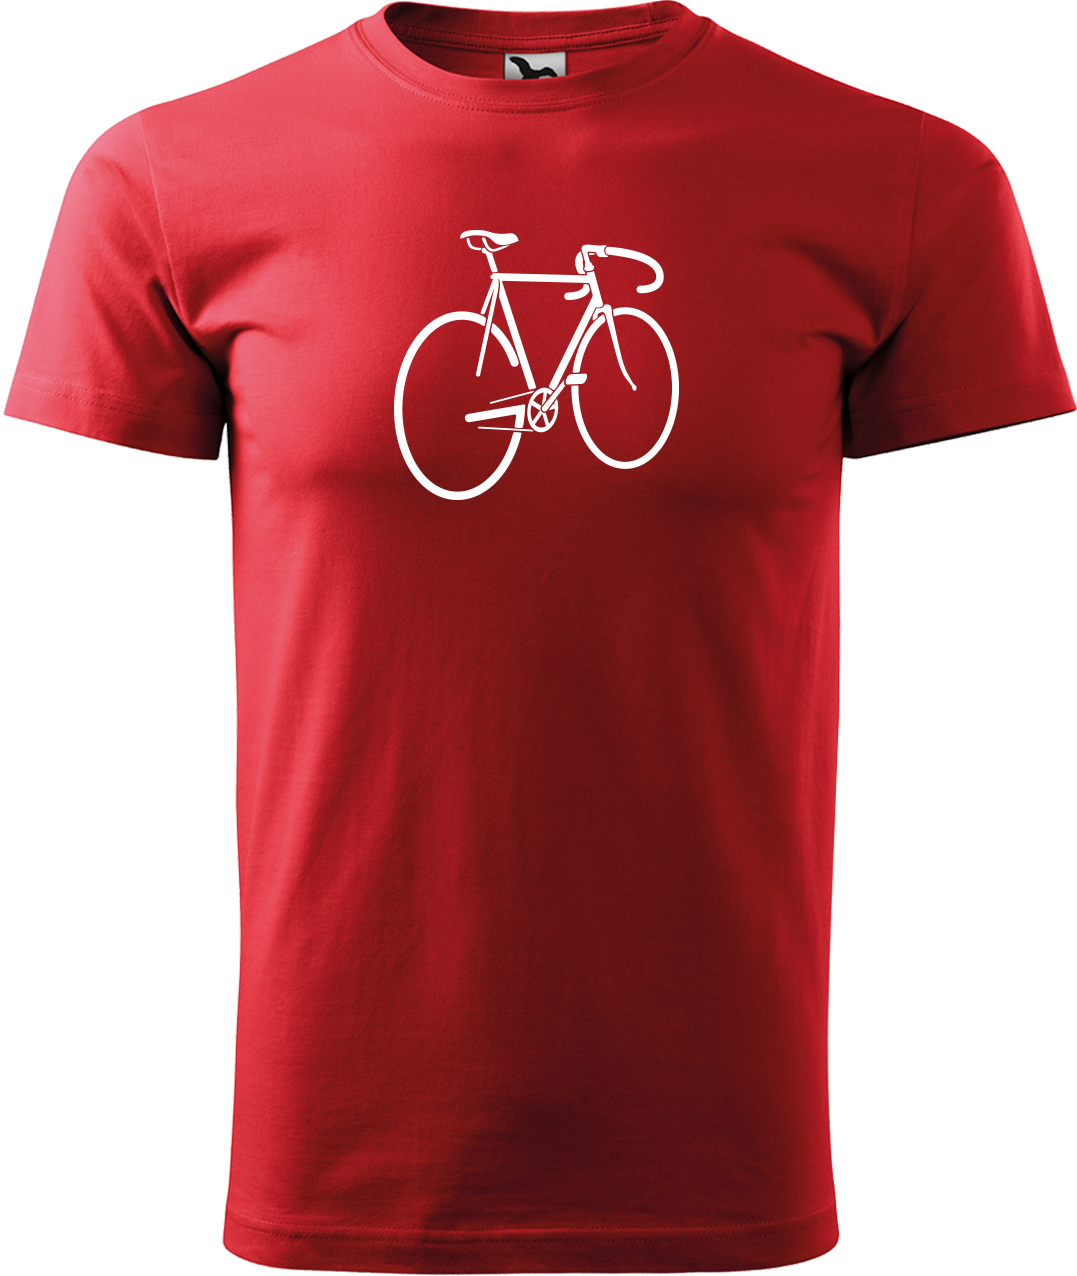 Pánské tričko s kolem - Pánské kolo Velikost: XL, Barva: Červená (07)